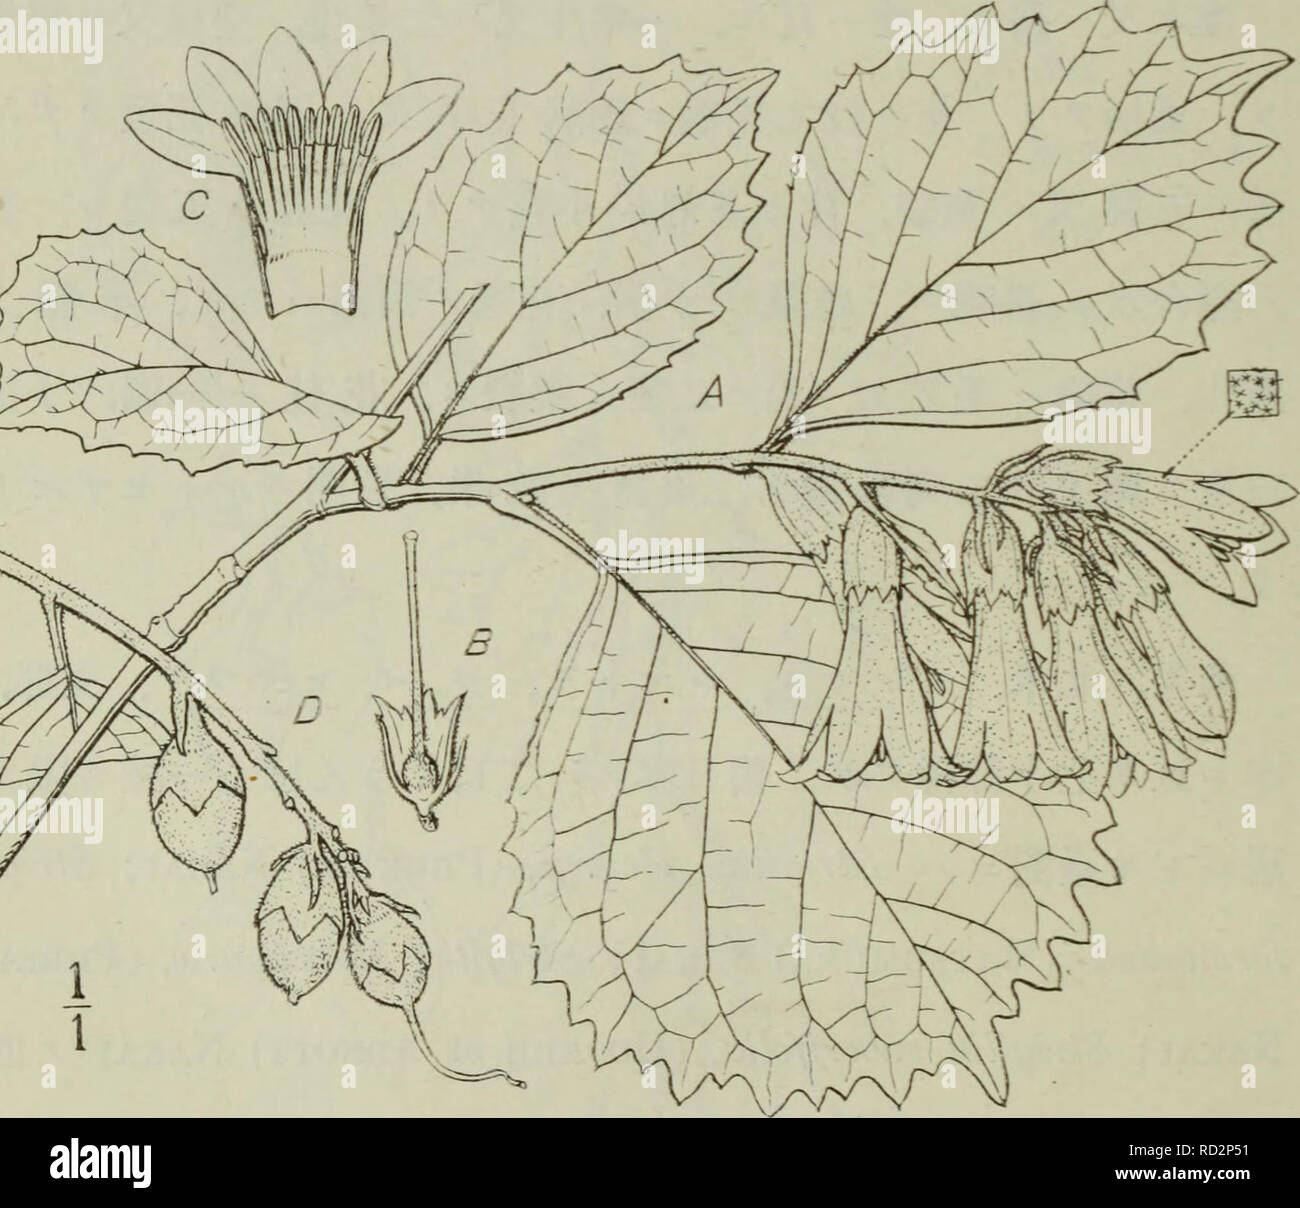 . Dai Nihon jumokushi. Trees; Shrubs. (25G) é½å£¤æ ç§ ãã¯ãããã»ã C^fiç¾ååã¼åï¼ Strigilia Shiraiana, (MajvIno) Nakai comb. nov. Syn. Styrax Shiraiana, Making in Tokyo Botanical Magazine XII. p. 50.(1898). é«ãµä¸ä¹è³äºç±³çªãçæ¨ãè¥æãããæçæ¯ã¡ãªãèæãåºé¨ã è½ã²å ã ãèæãèè£ããâ¦æçæ¯ã¡ãªãèèº«ãè¡¨é¢ãç¶ è²ç¡æ¯ã å¸¸ãå»£æ¿¶ããªãè±ãæãå ç«¯ã¥ç¸½çè±åºã²ãã³ãæçæ¯å¯çã¹ã. Please note that these images are extracted from scanned page images that may have been digitally enhanced for readability - coloration and appearance of these illustrations may not perfectly resemble the original work.. Nakai, Takenoshin, 1882-; Ko Stock Photo